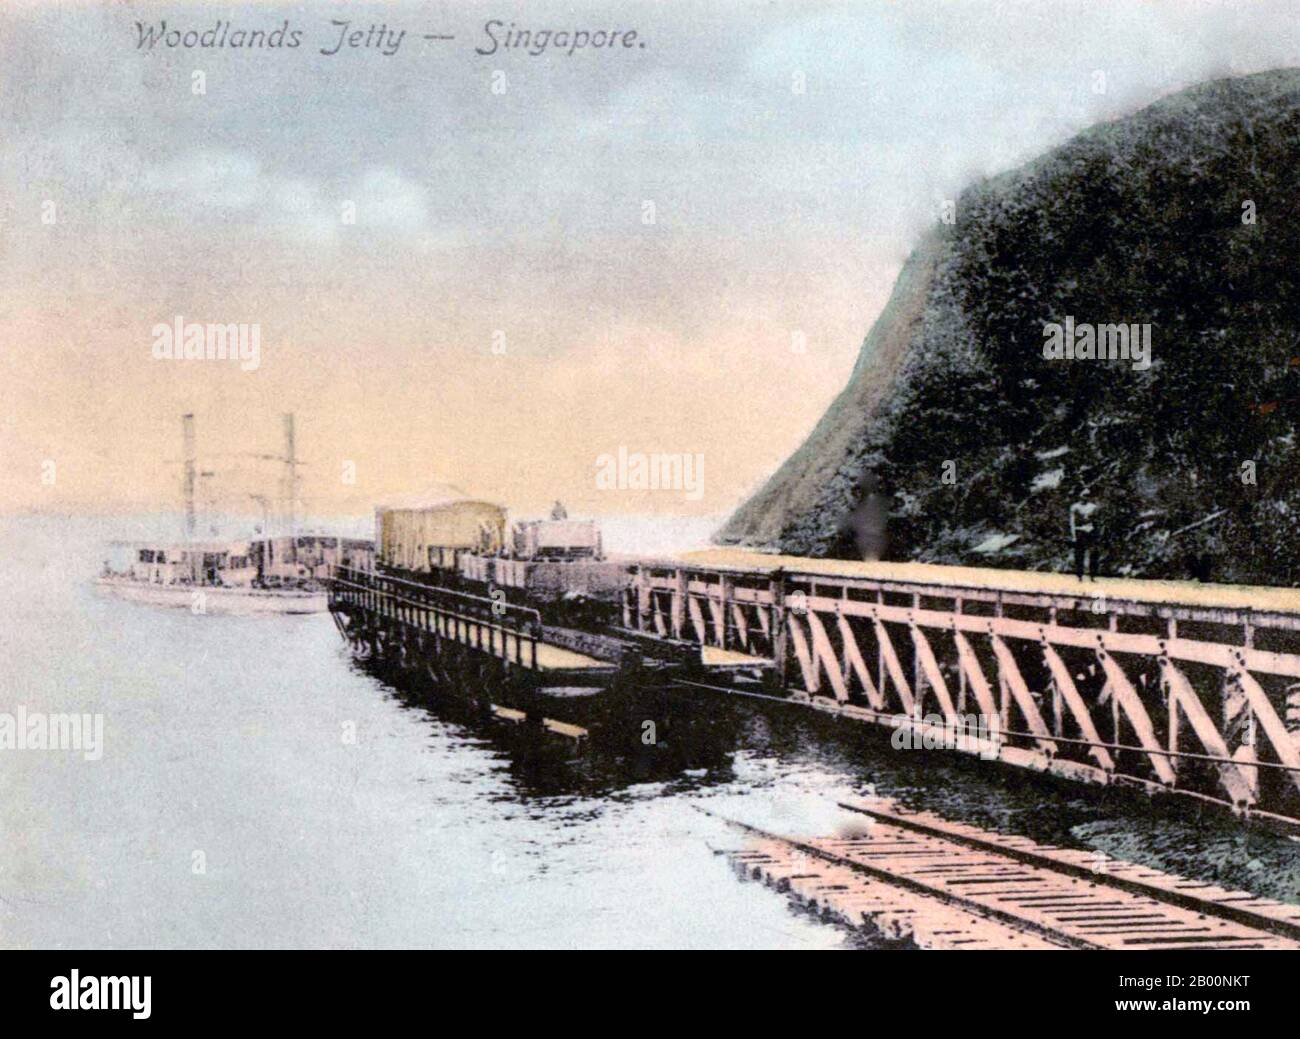 Singapour : jetée des bois, carte postale, fin du XIXe - début du XXe siècle. Singapour a accueilli un poste commercial de la East India Company en 1819 avec la permission du Sultanat de Johor. Les Britanniques ont obtenu la souveraineté sur l'île en 1824 et Singapour est devenu l'un des établissements britanniques du détroit en 1826. Occupée par les Japonais pendant la Seconde Guerre mondiale, Singapour a déclaré son indépendance, s'unissant avec d'autres anciens territoires britanniques pour former la Malaisie en 1963, bien qu'elle ait été séparée de la Malaisie deux ans plus tard. Depuis, elle a connu une augmentation massive de sa richesse et est l'un des quatre Tigres asiatiques Banque D'Images